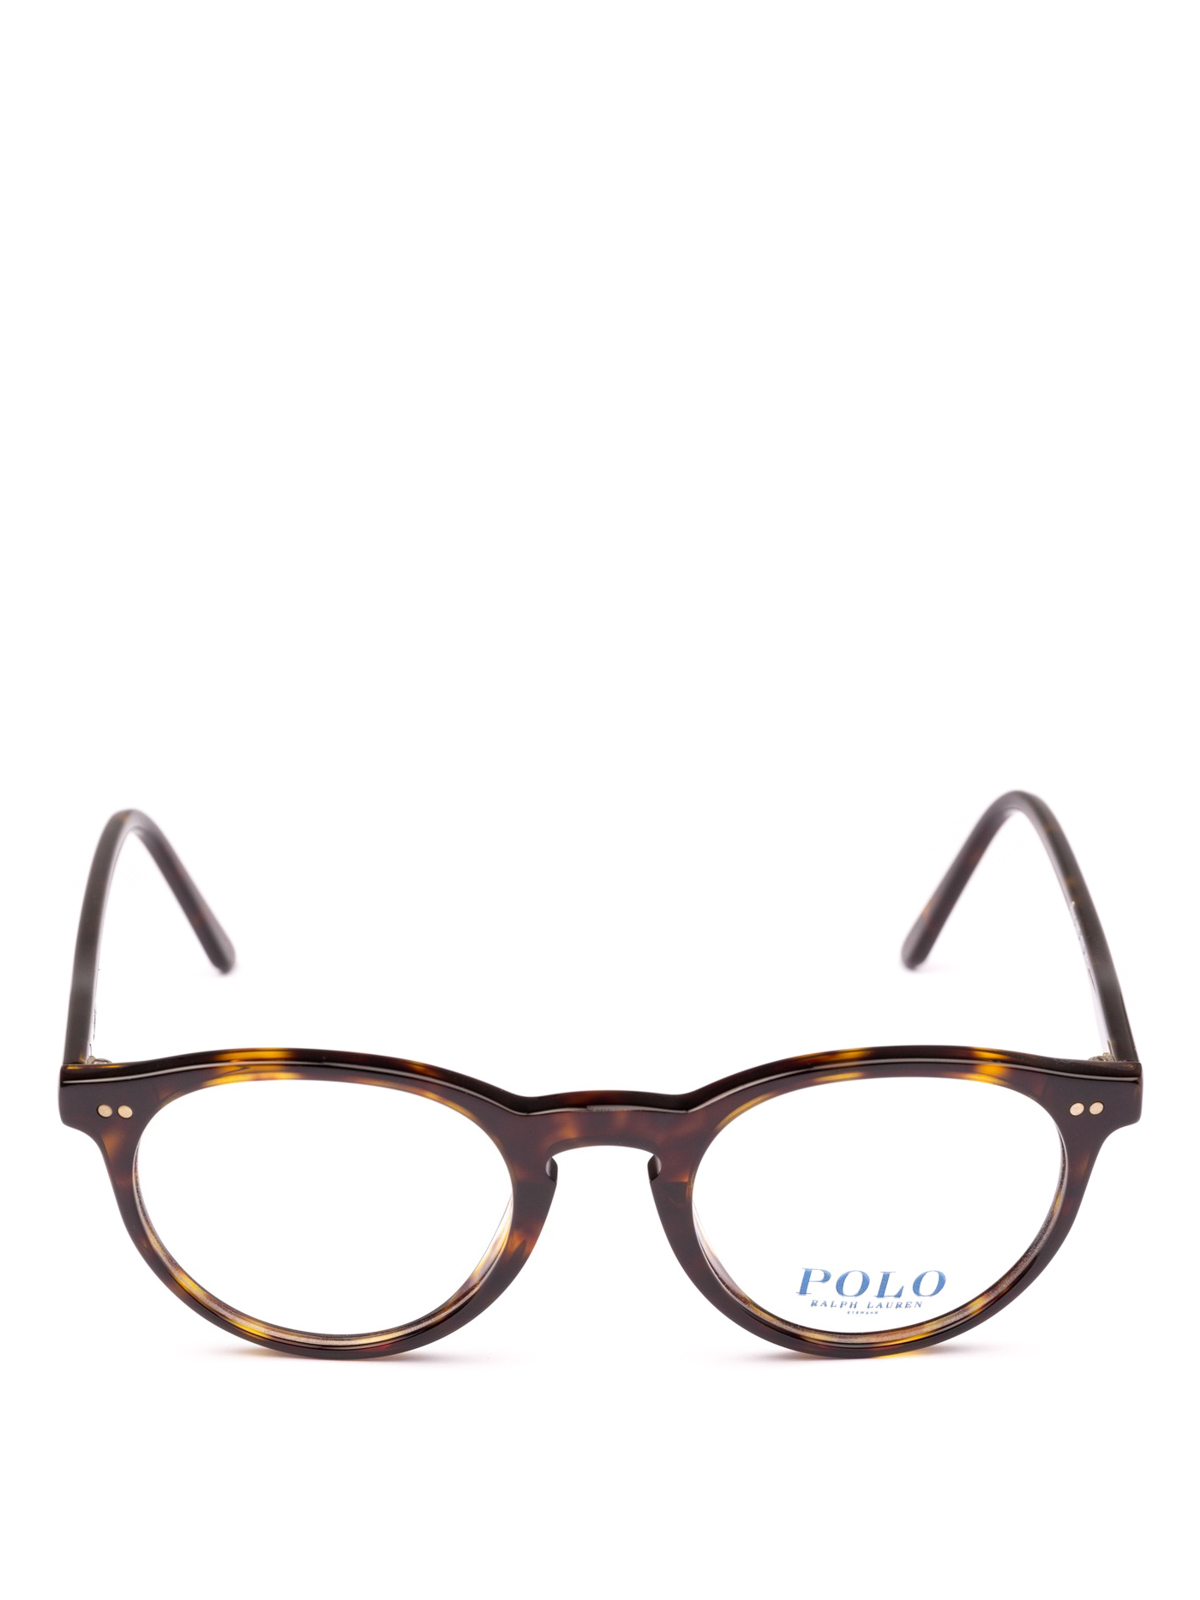 ralph lauren glasses online